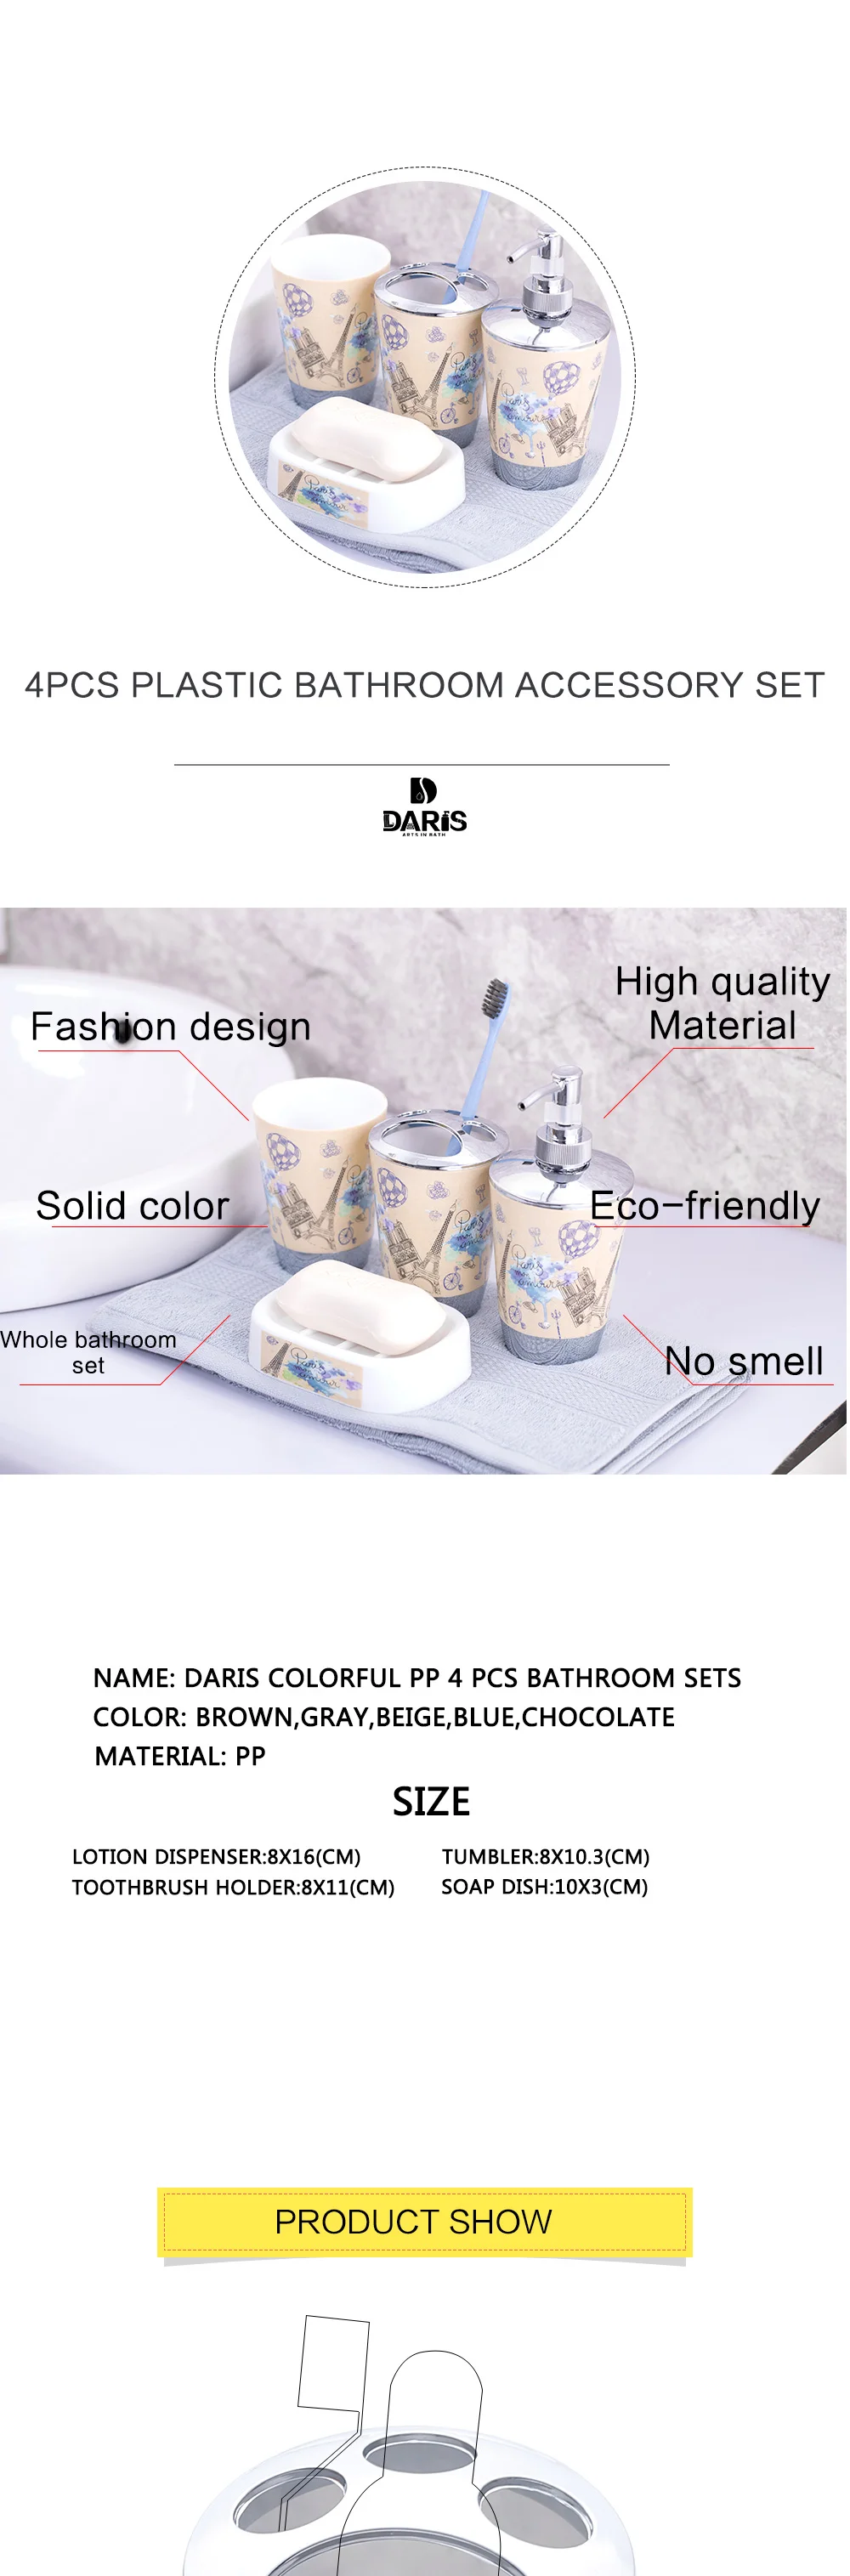 SDARISB пластиковый портрет Одри Хепберн, 6 комплектов туалетных принадлежностей и туалетной щетки, аксессуары для ванной комнаты, набор для ванной